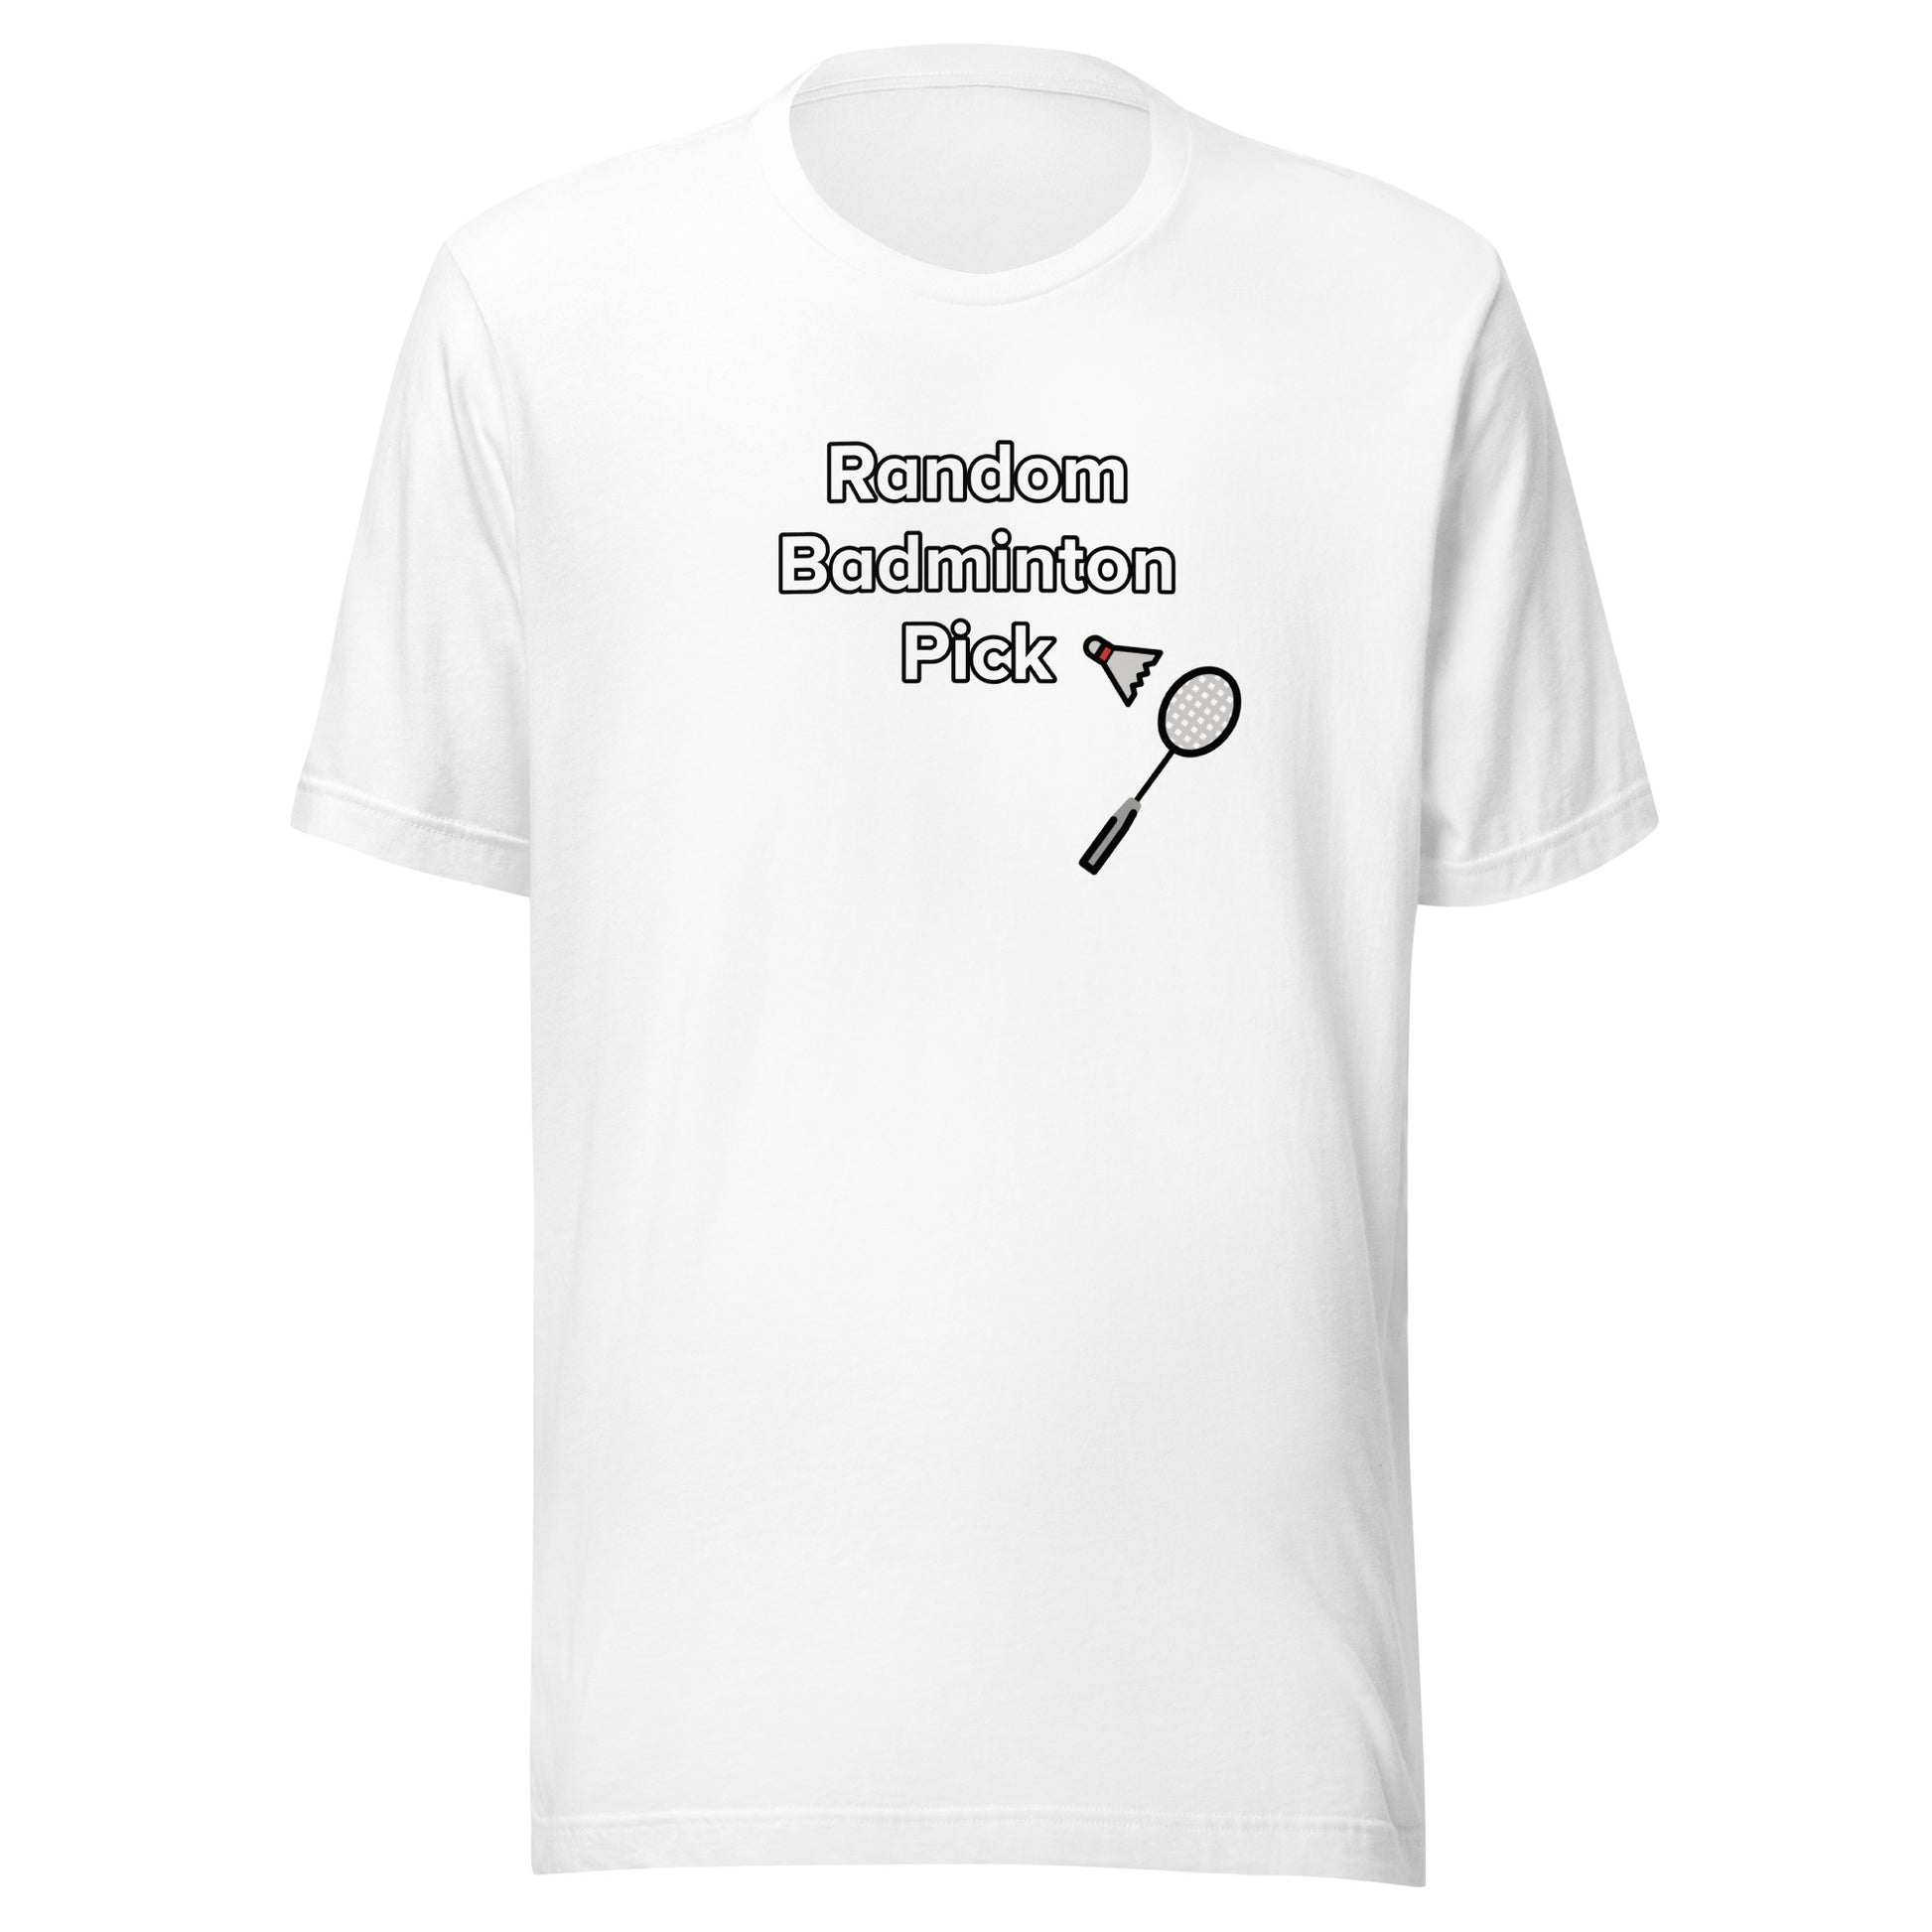 Badminton Pick' T-shirt – Austin Krance